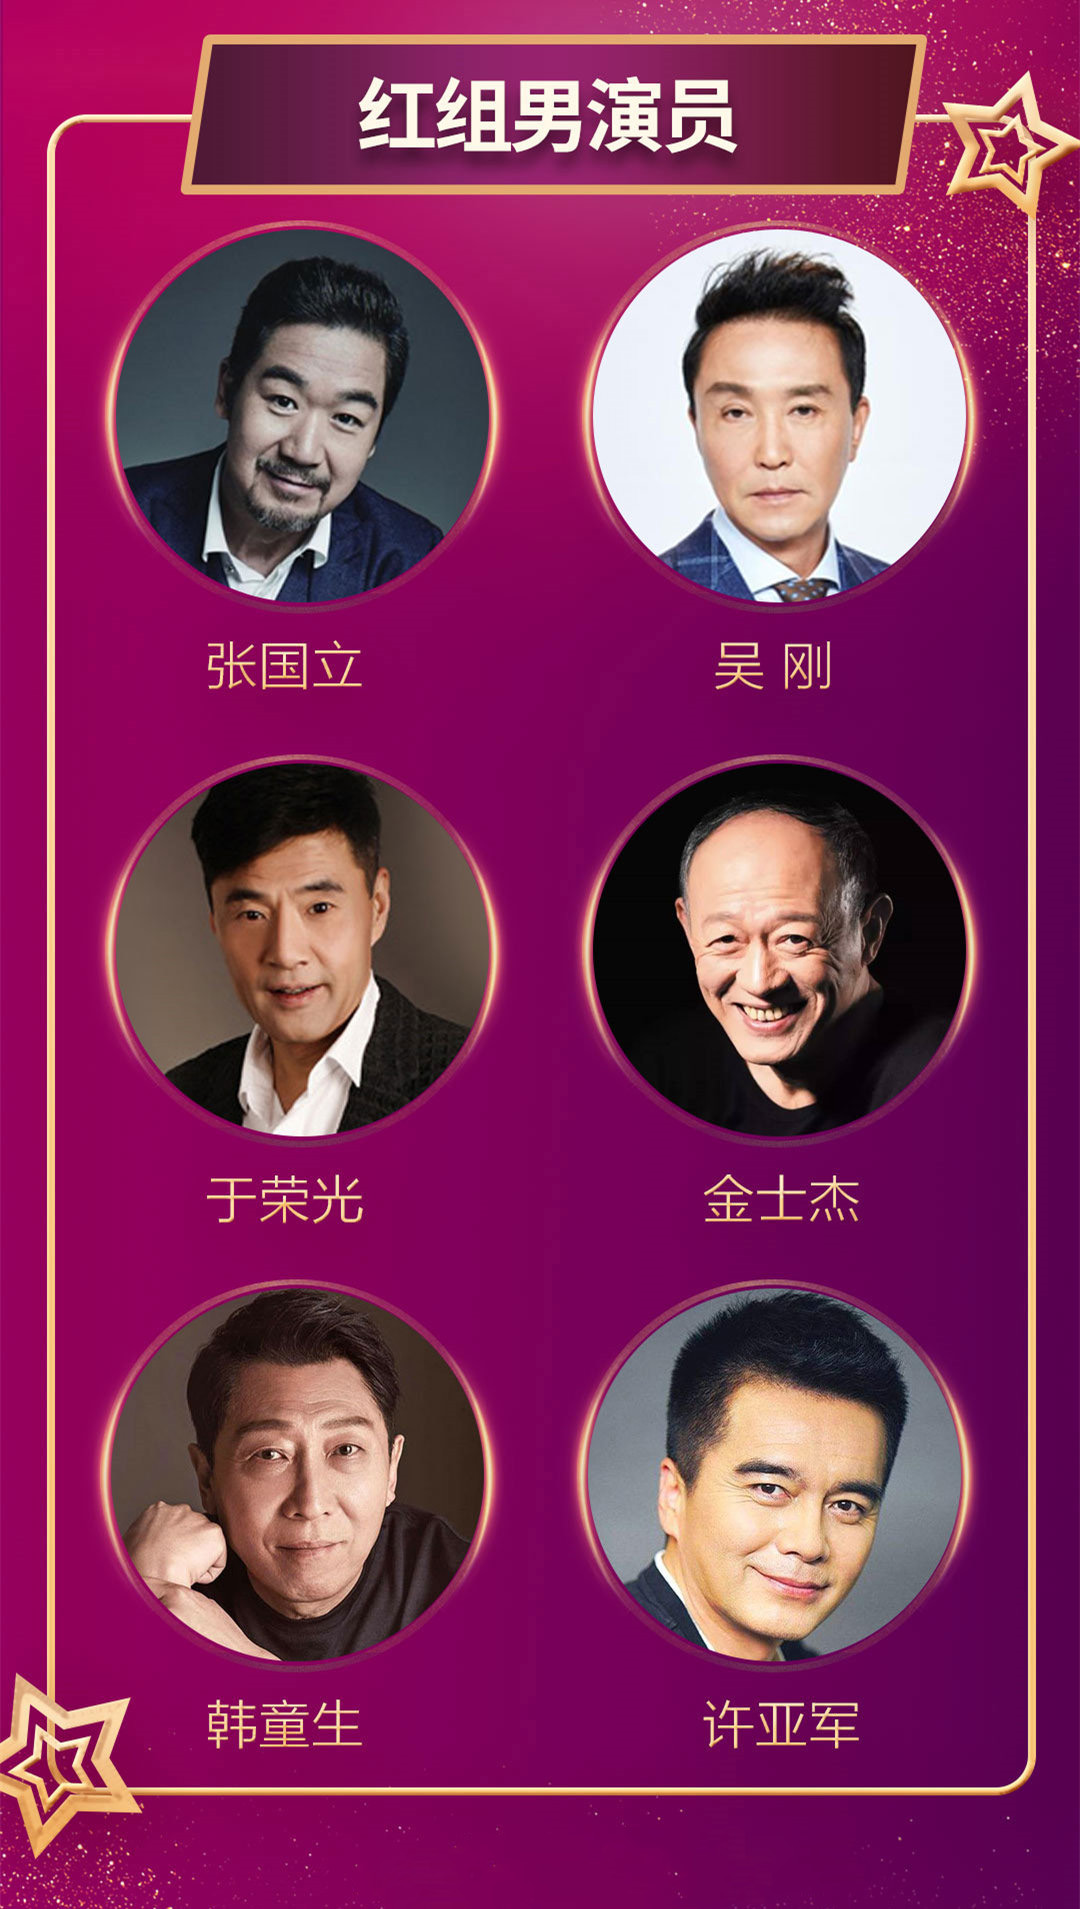 2019中国好演员年度盛典成都站